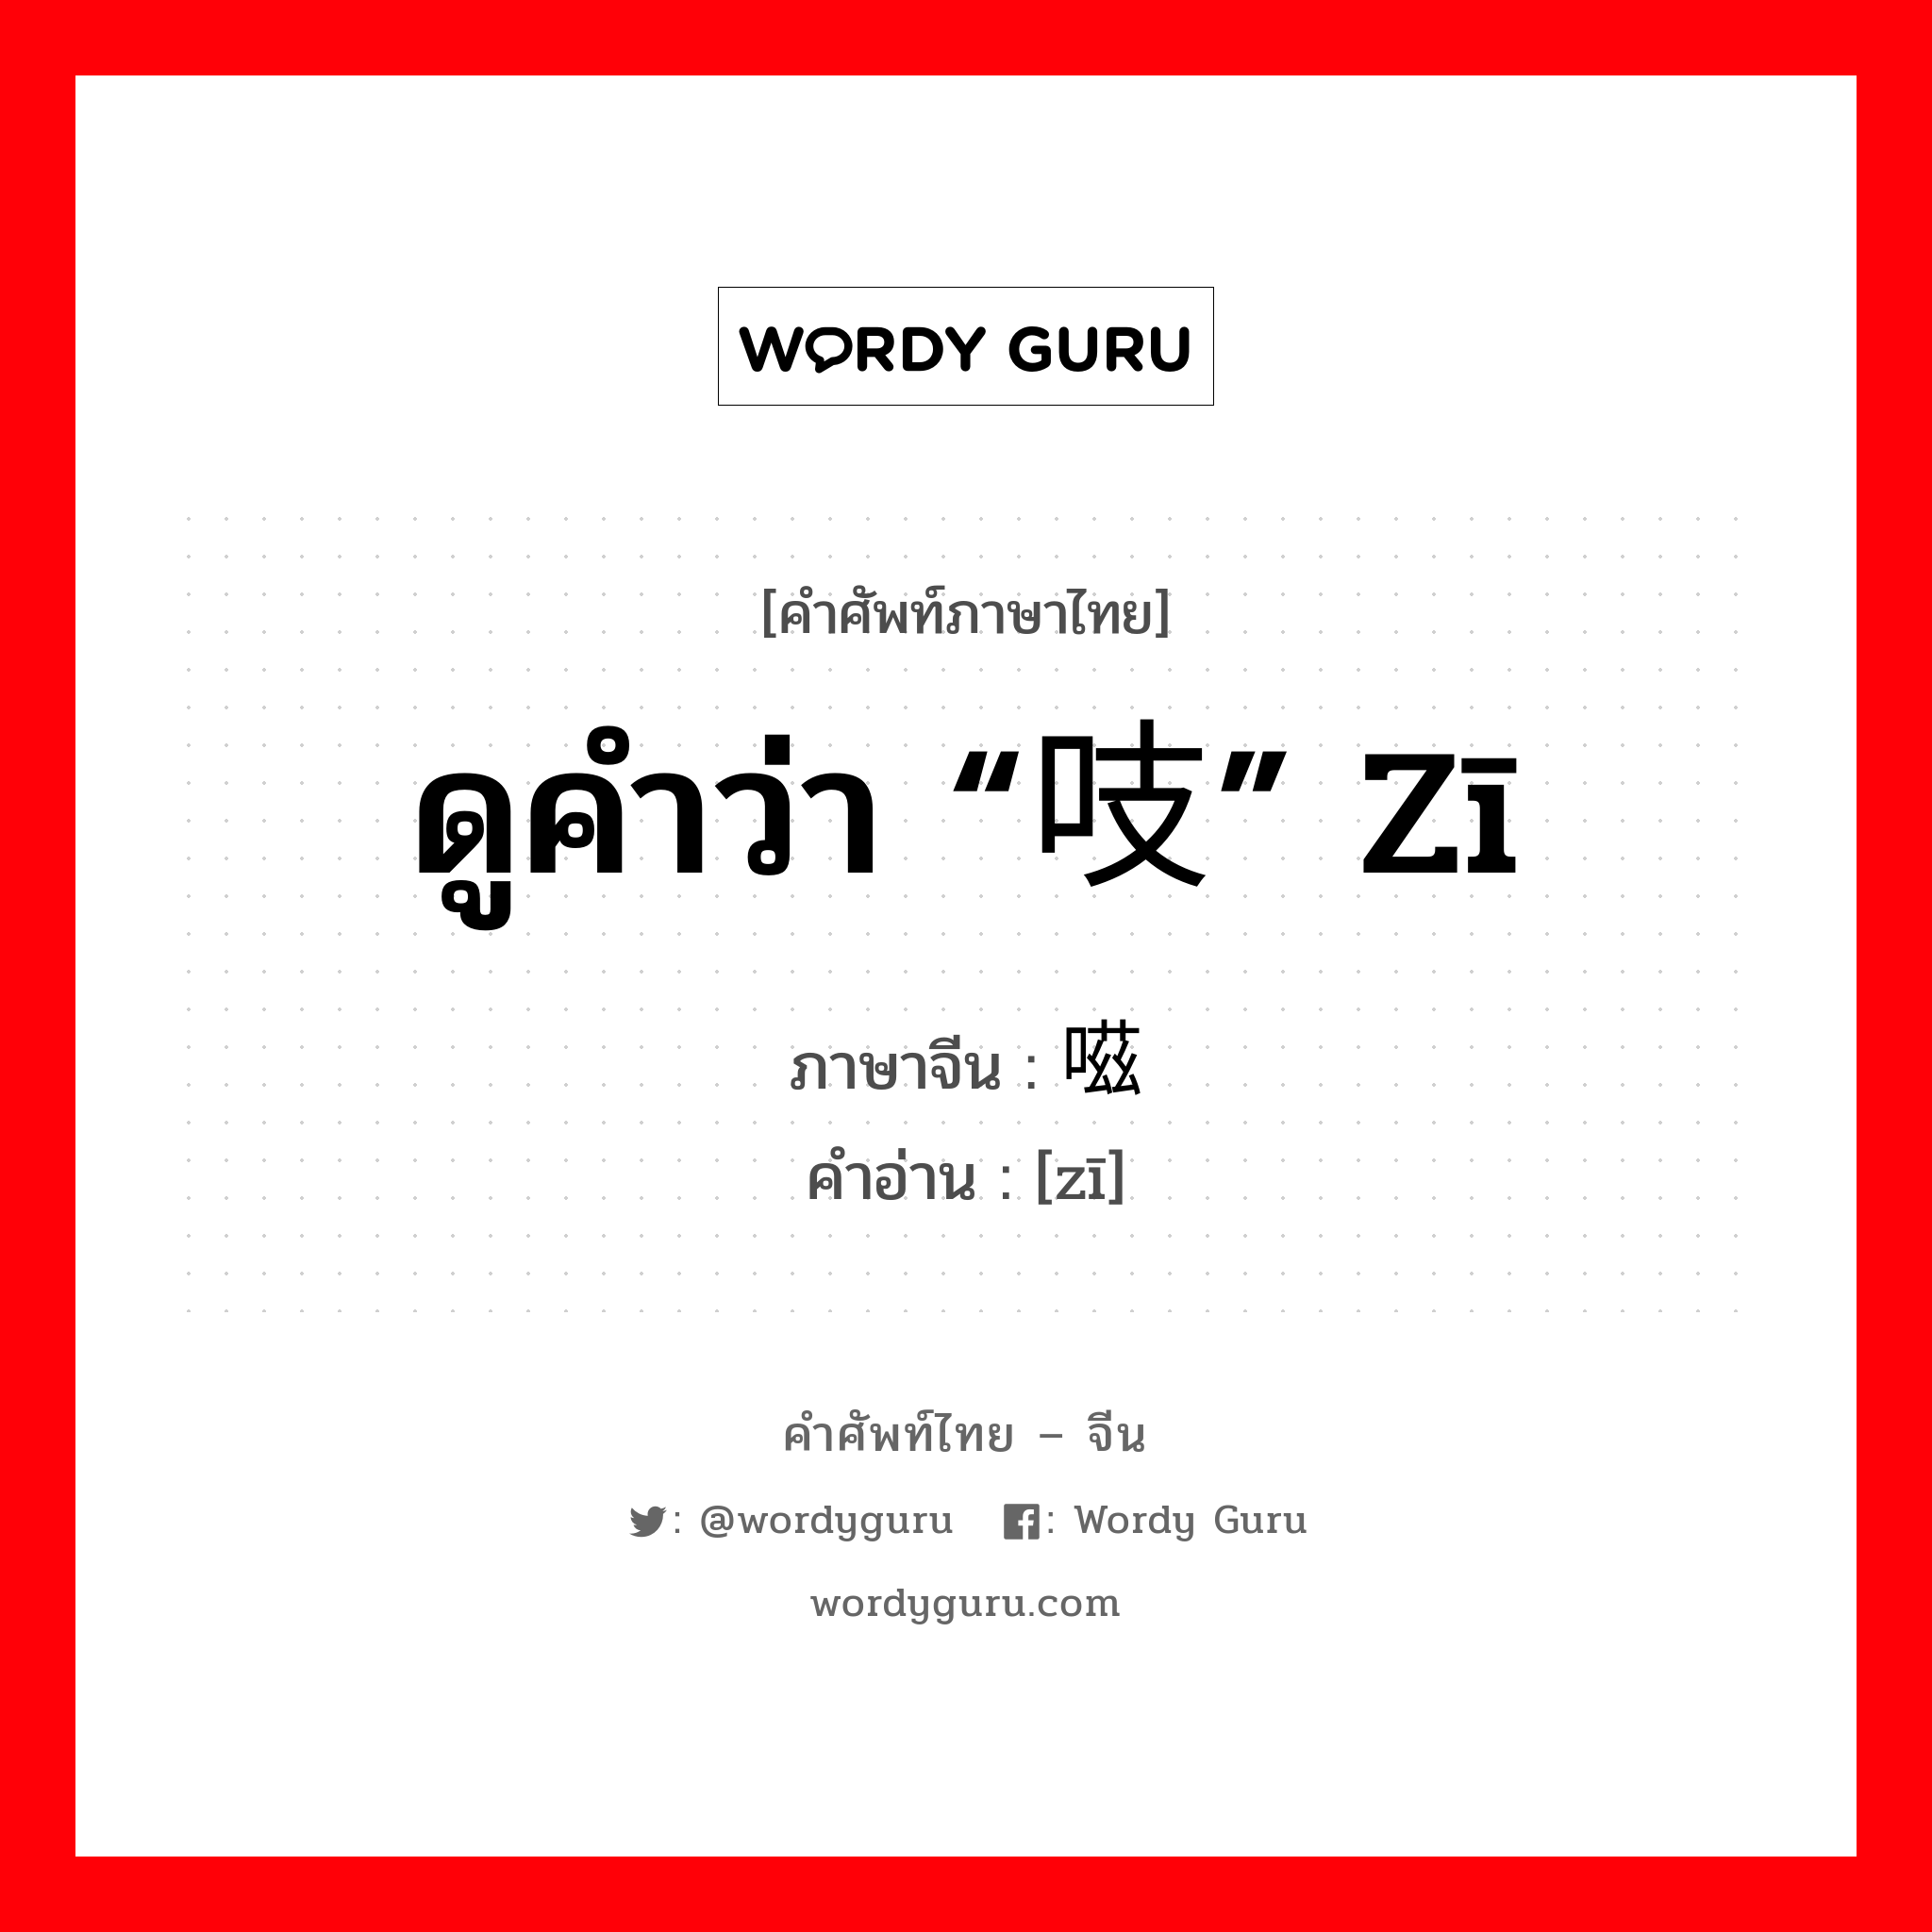 ดูคำว่า “吱” zī ภาษาจีนคืออะไร, คำศัพท์ภาษาไทย - จีน ดูคำว่า “吱” zī ภาษาจีน 嗞 คำอ่าน [zī]